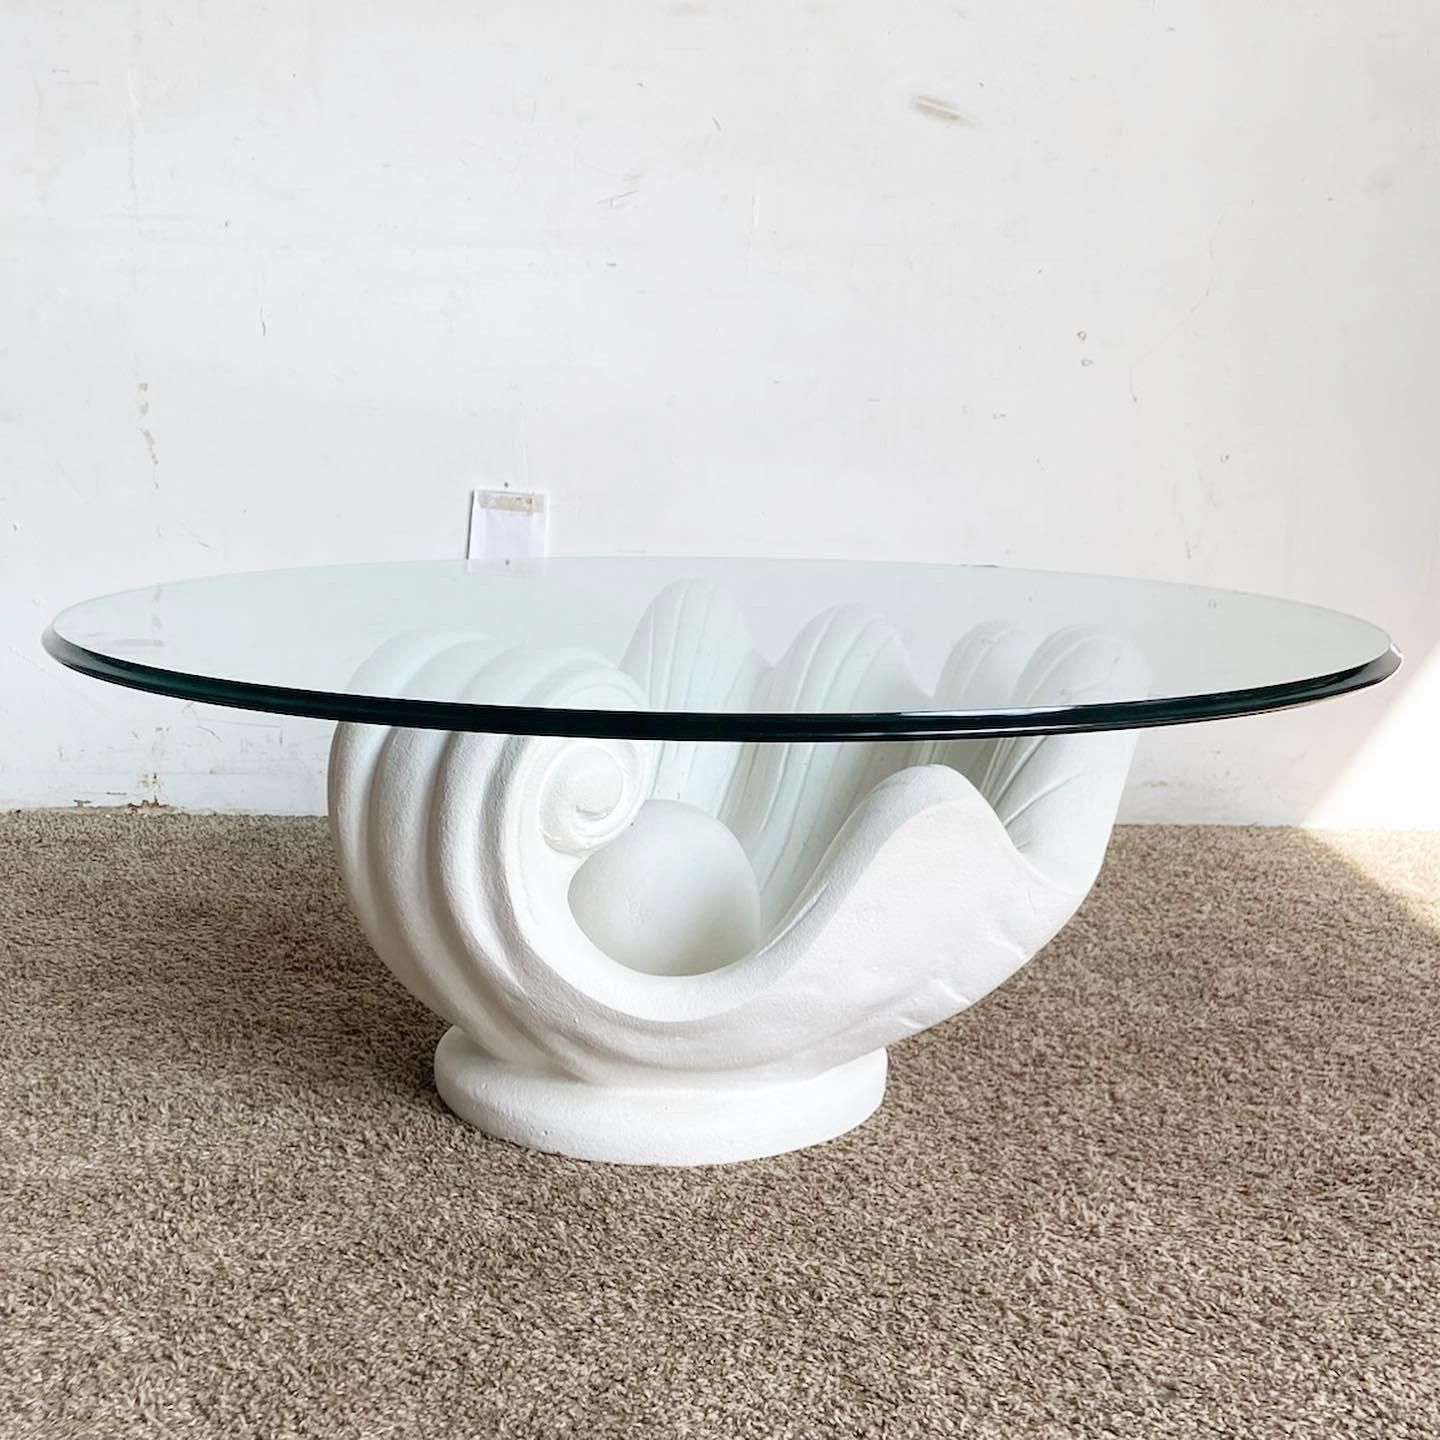 Voici la table basse moderne Regency en plâtre blanc avec plateau en verre en forme de coquille de palourde. Cette pièce allie harmonieusement l'élégance intemporelle et le charme côtier. Avec son socle en plâtre blanc en forme de coquille de